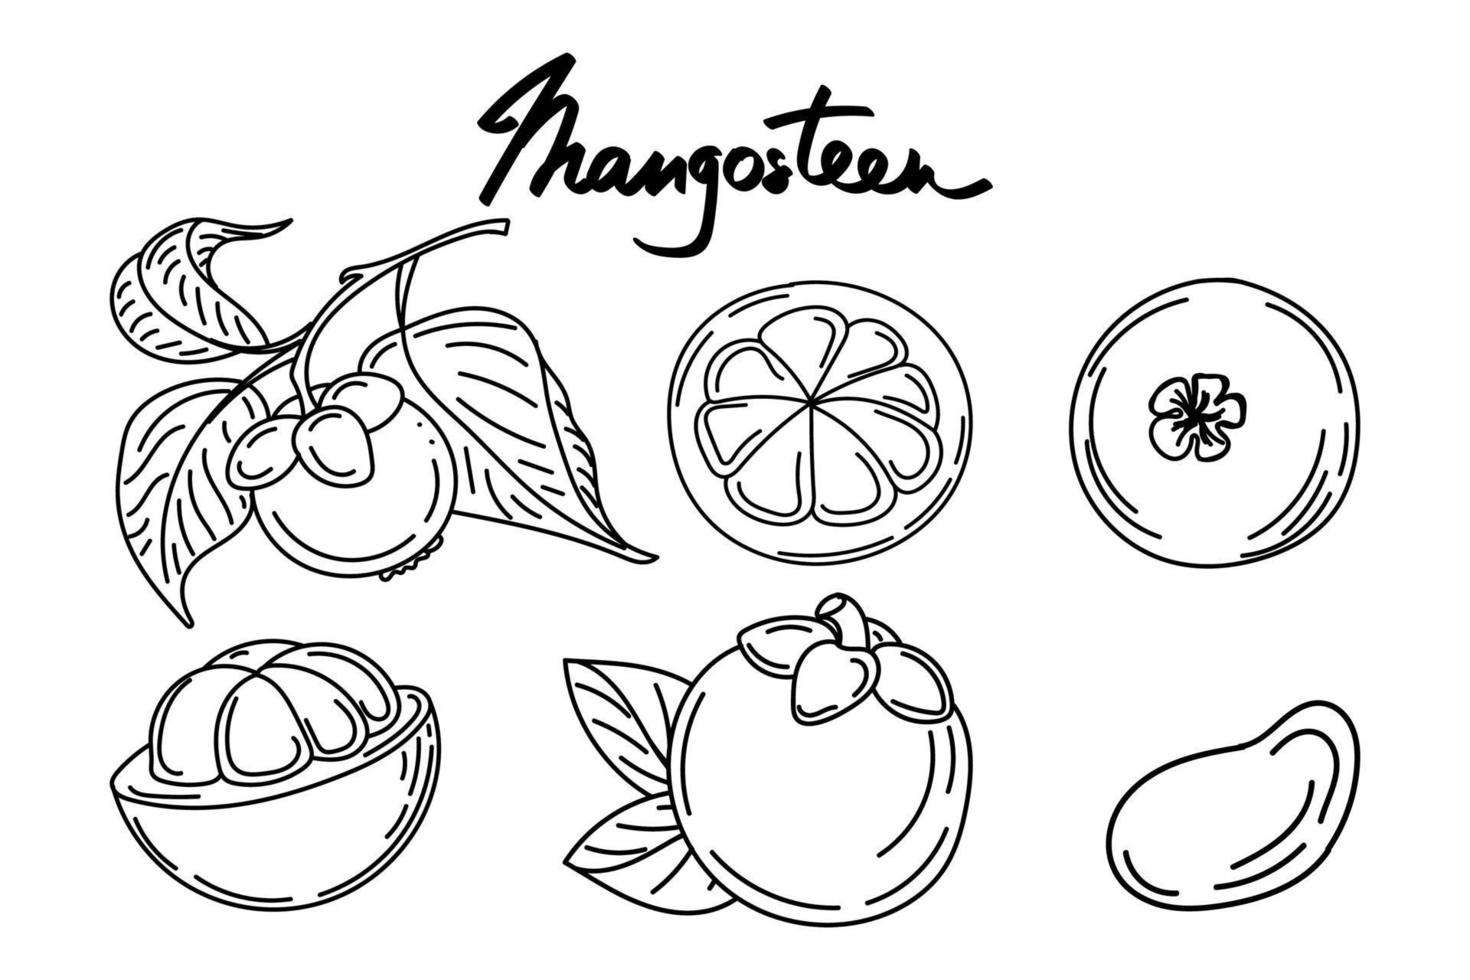 um conjunto de frutas e folhas de mangostão, elementos de doodle estilo esboço desenhados à mão. mangostão em frutas exóticas cortadas e ramificadas. Tailândia. ilustração vetorial vetor